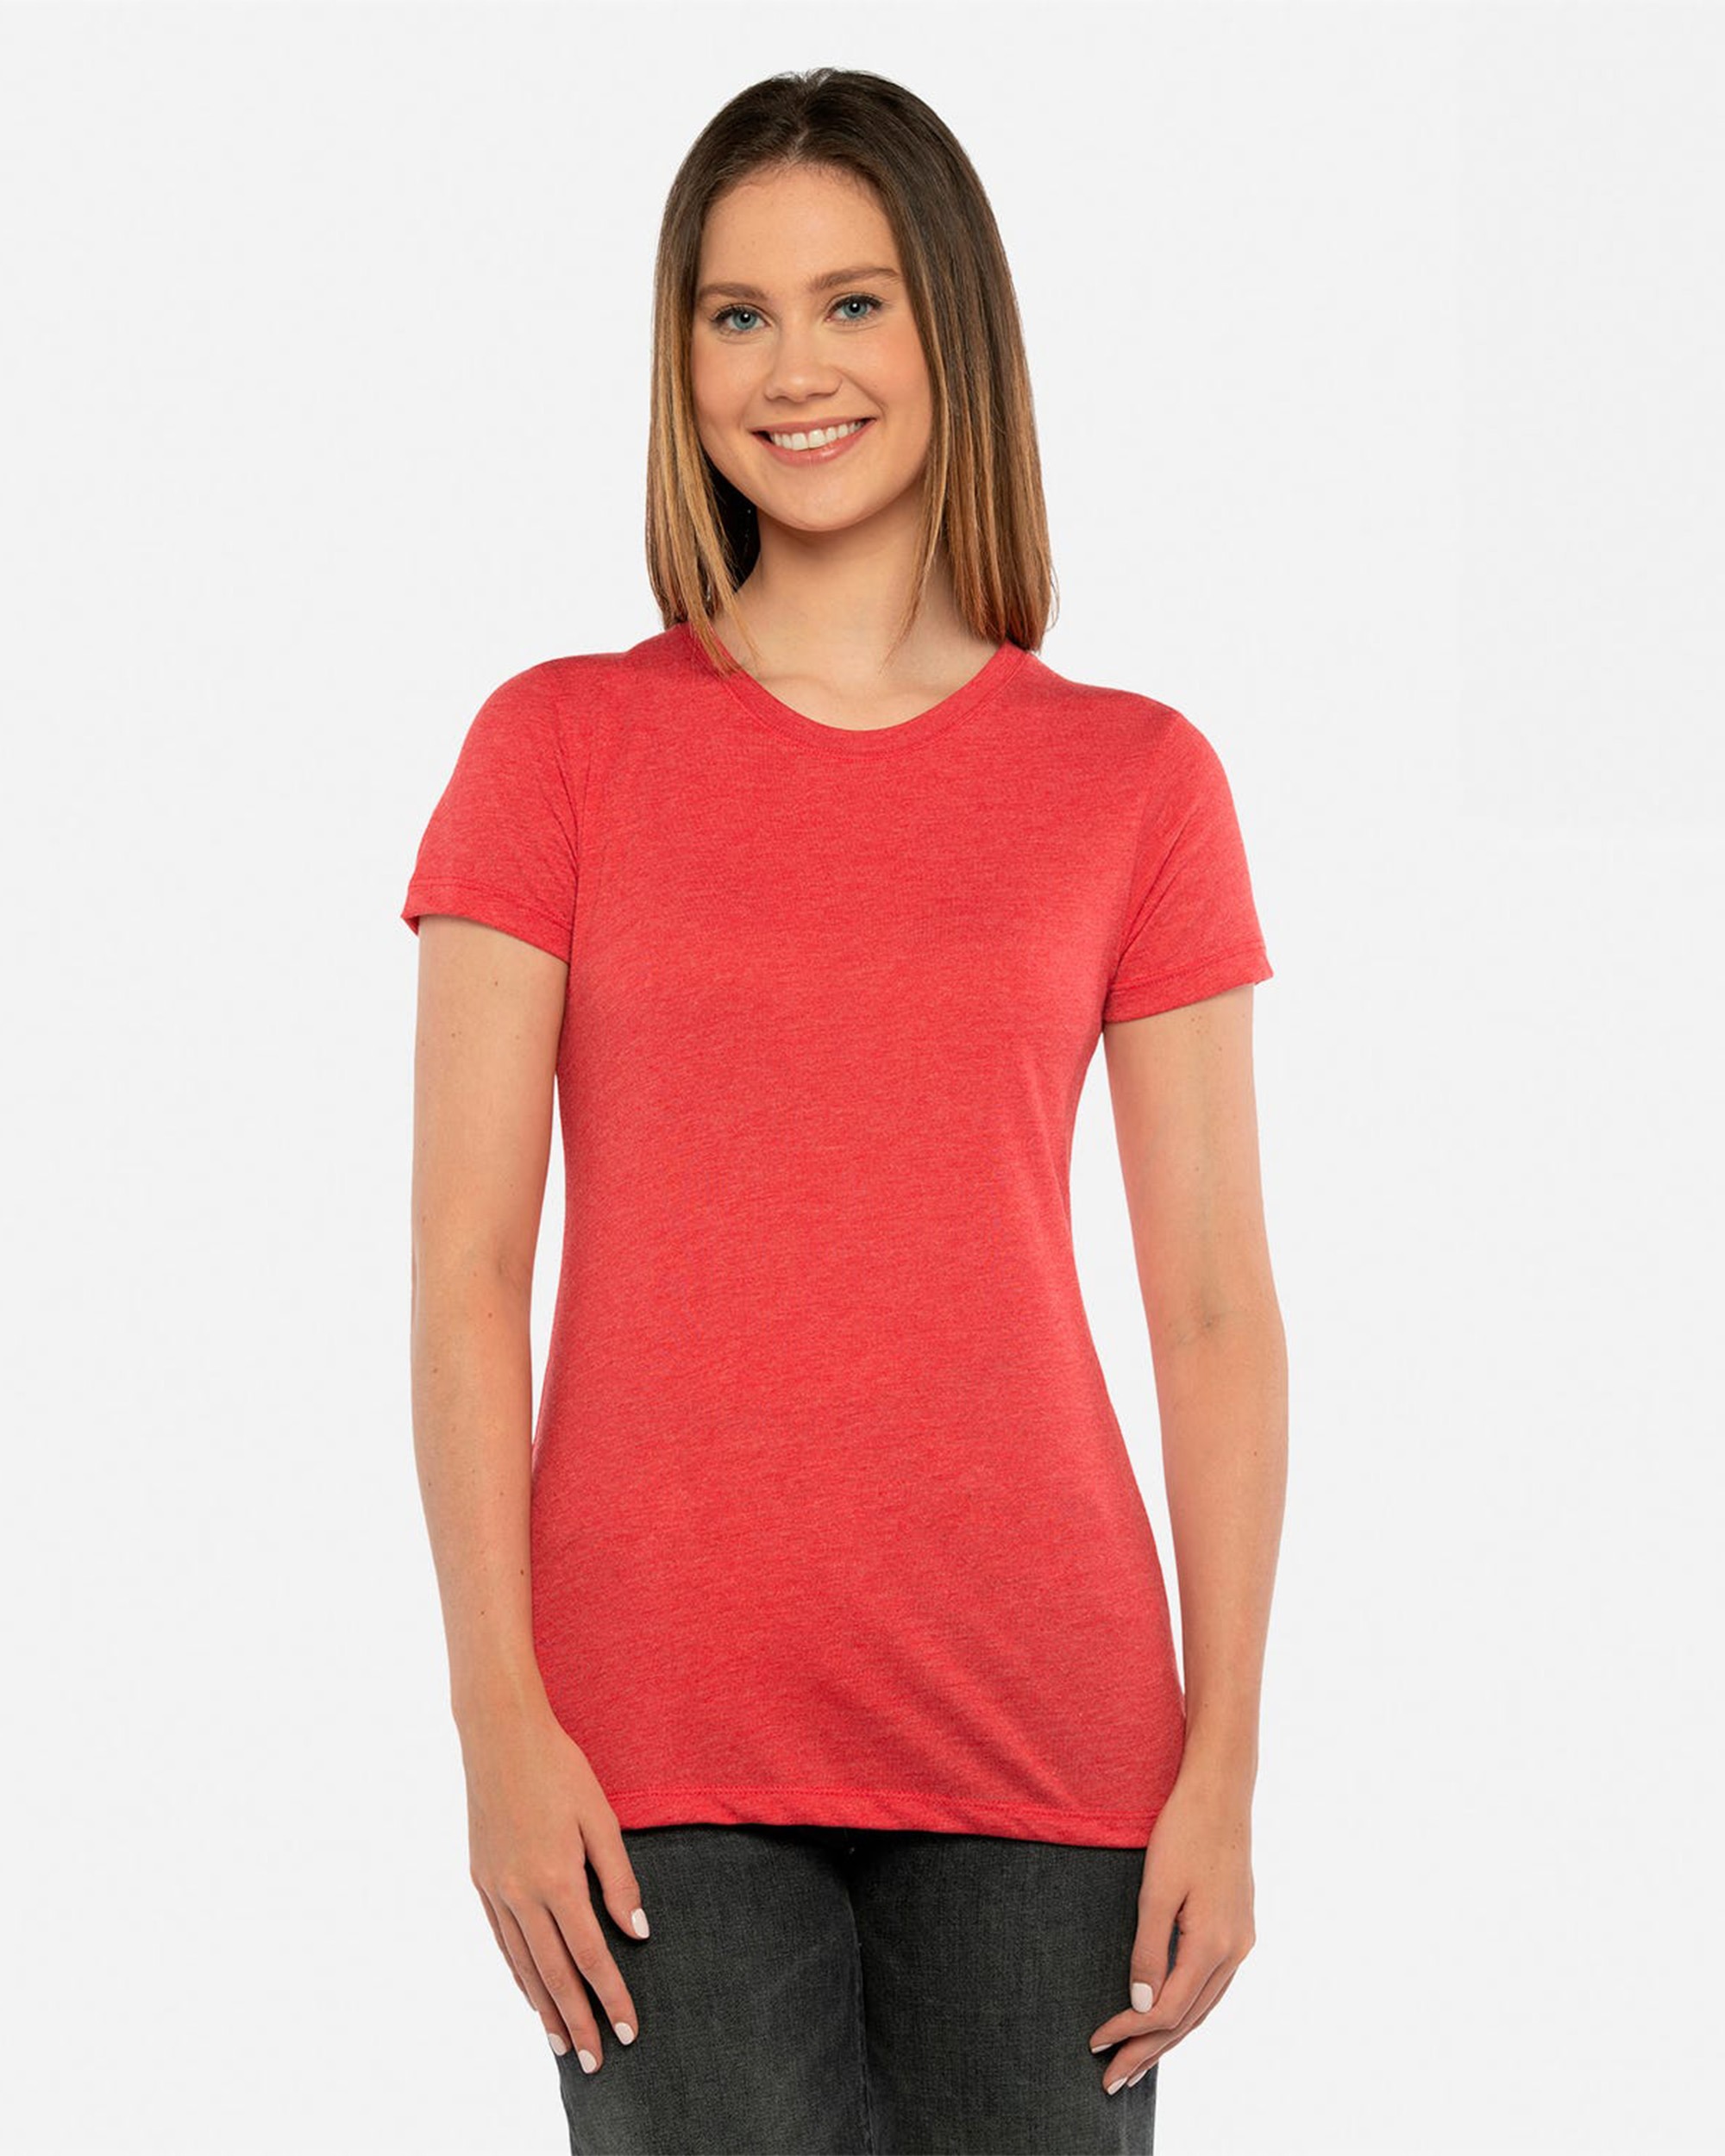 Next Level Apparel® 6710 Women's Tri-Blend T-Shirt